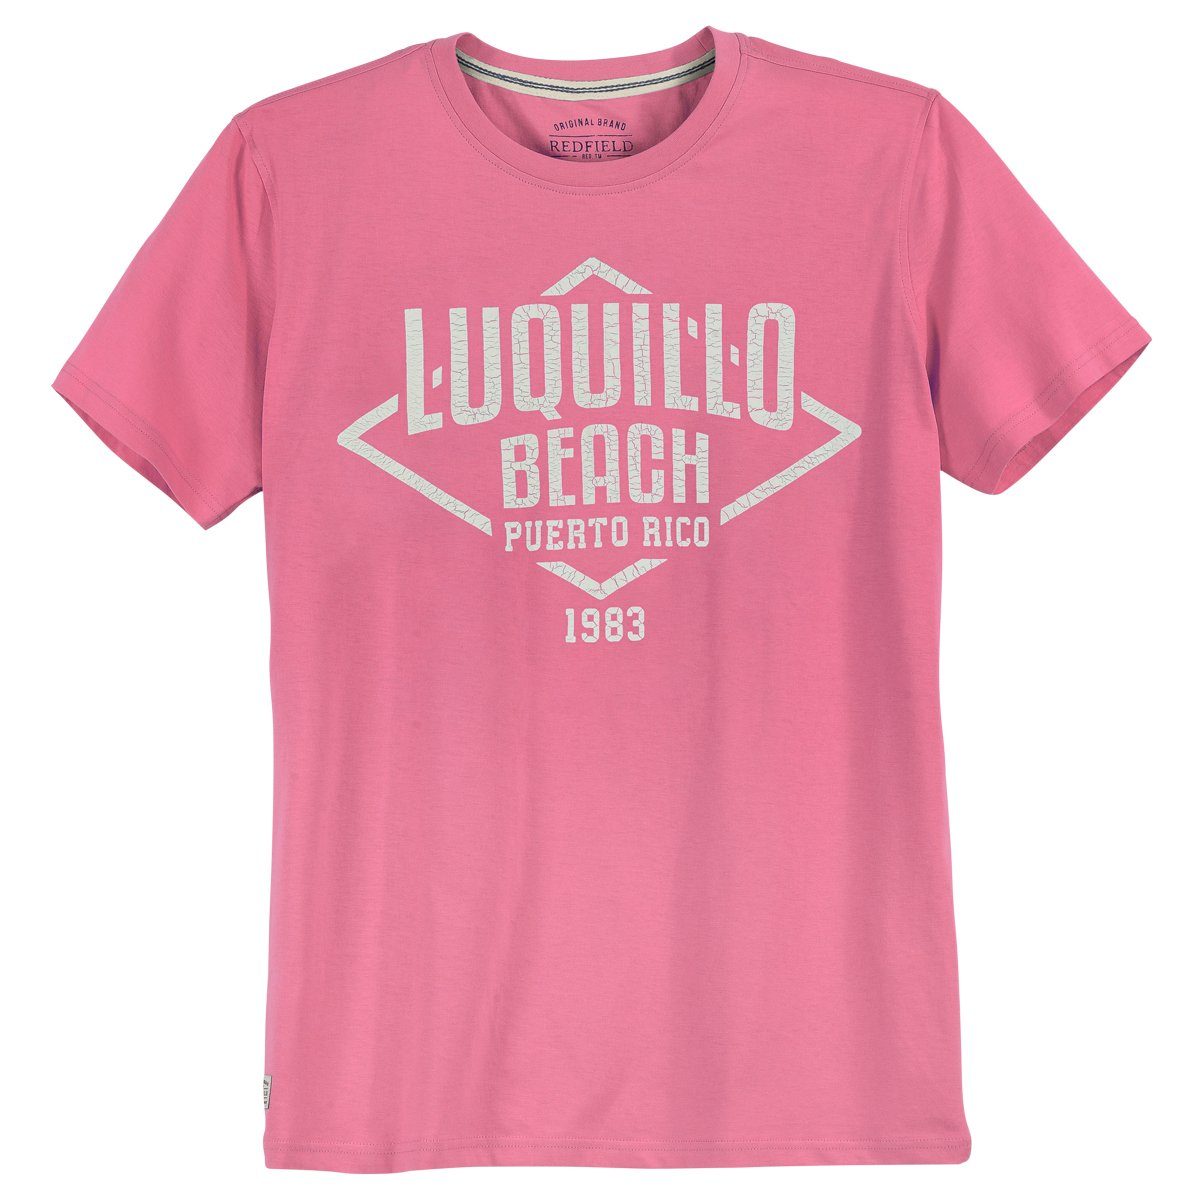 Rundhalsshirt Beach redfield T-Shirt Größen pink Redfield Luquillo Große Print